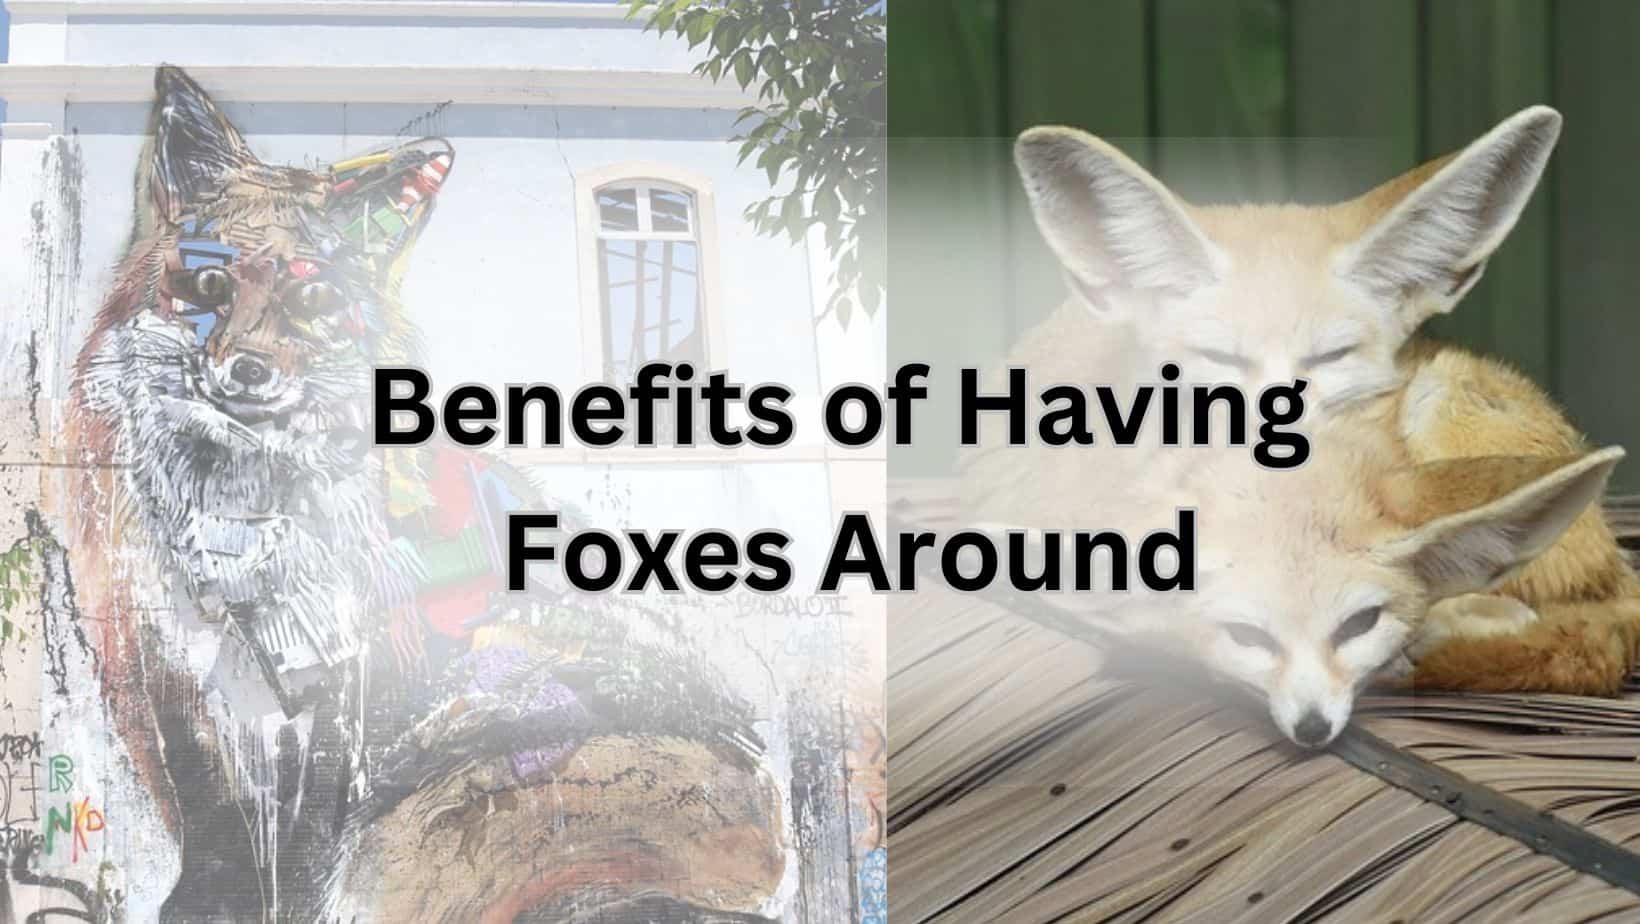 Benefits of Having Foxes Around